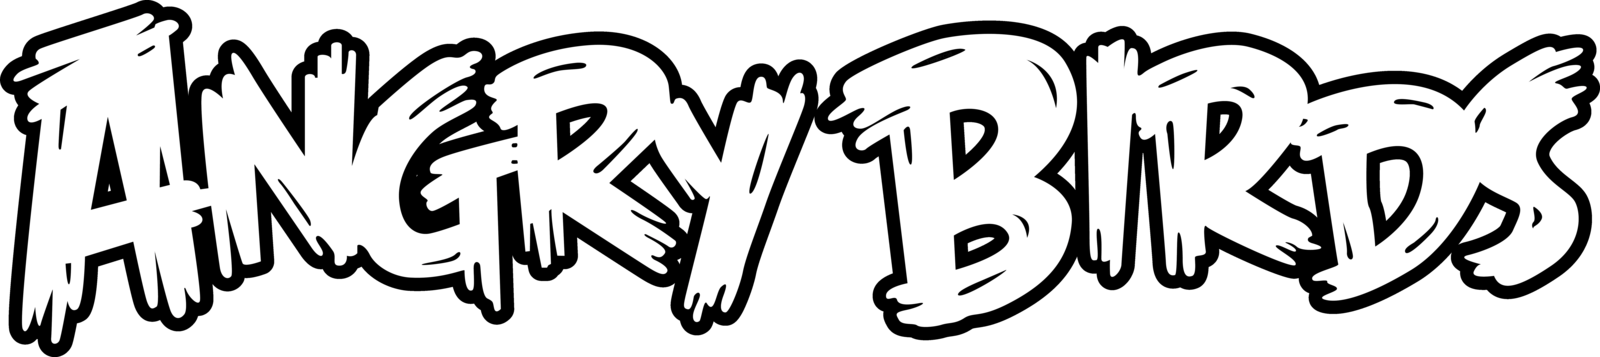 Angry Birds Logotipo PNG imagem de Alta Qualidade